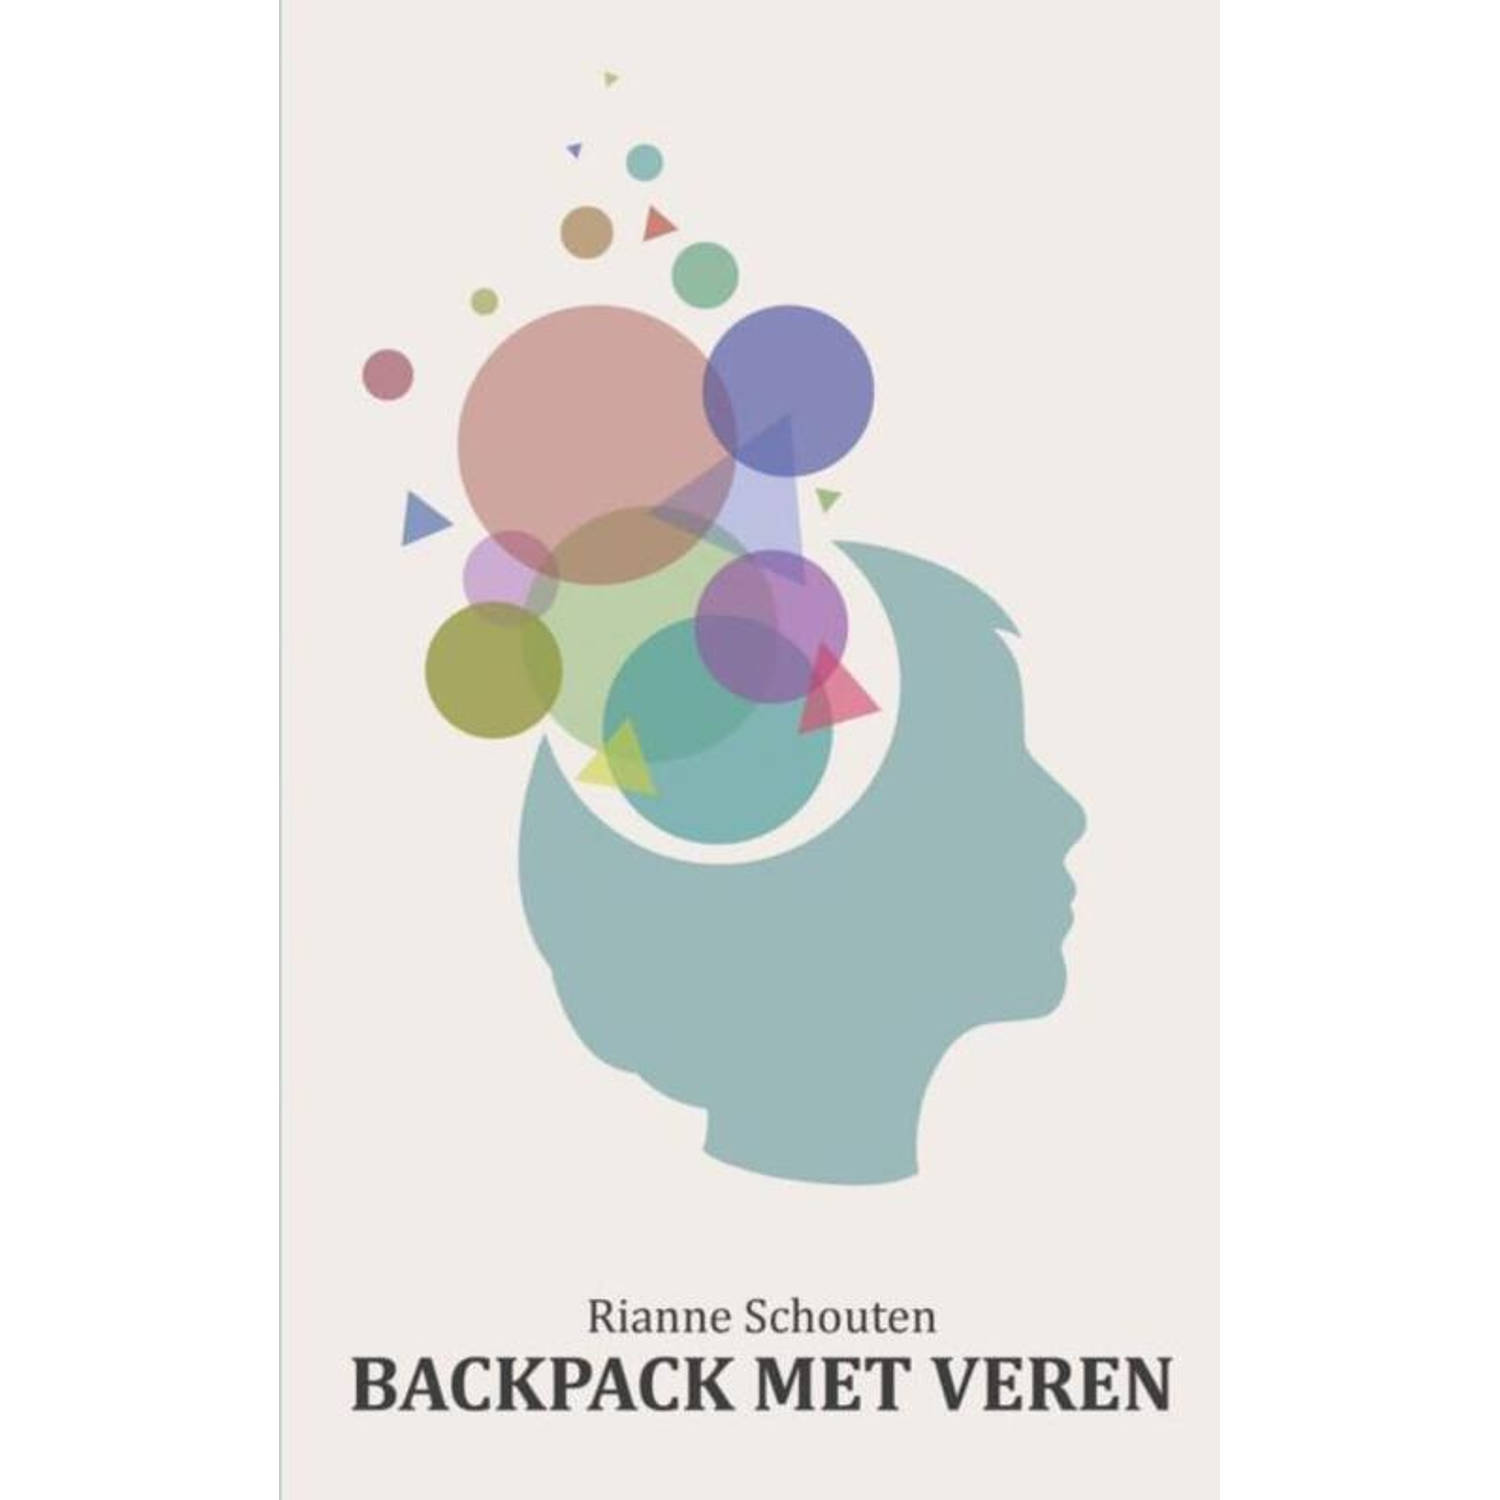 Backpack met veren. de impact van autisme op mijn leven als jonge, ambitieuze vrouw, Rianne Schouten